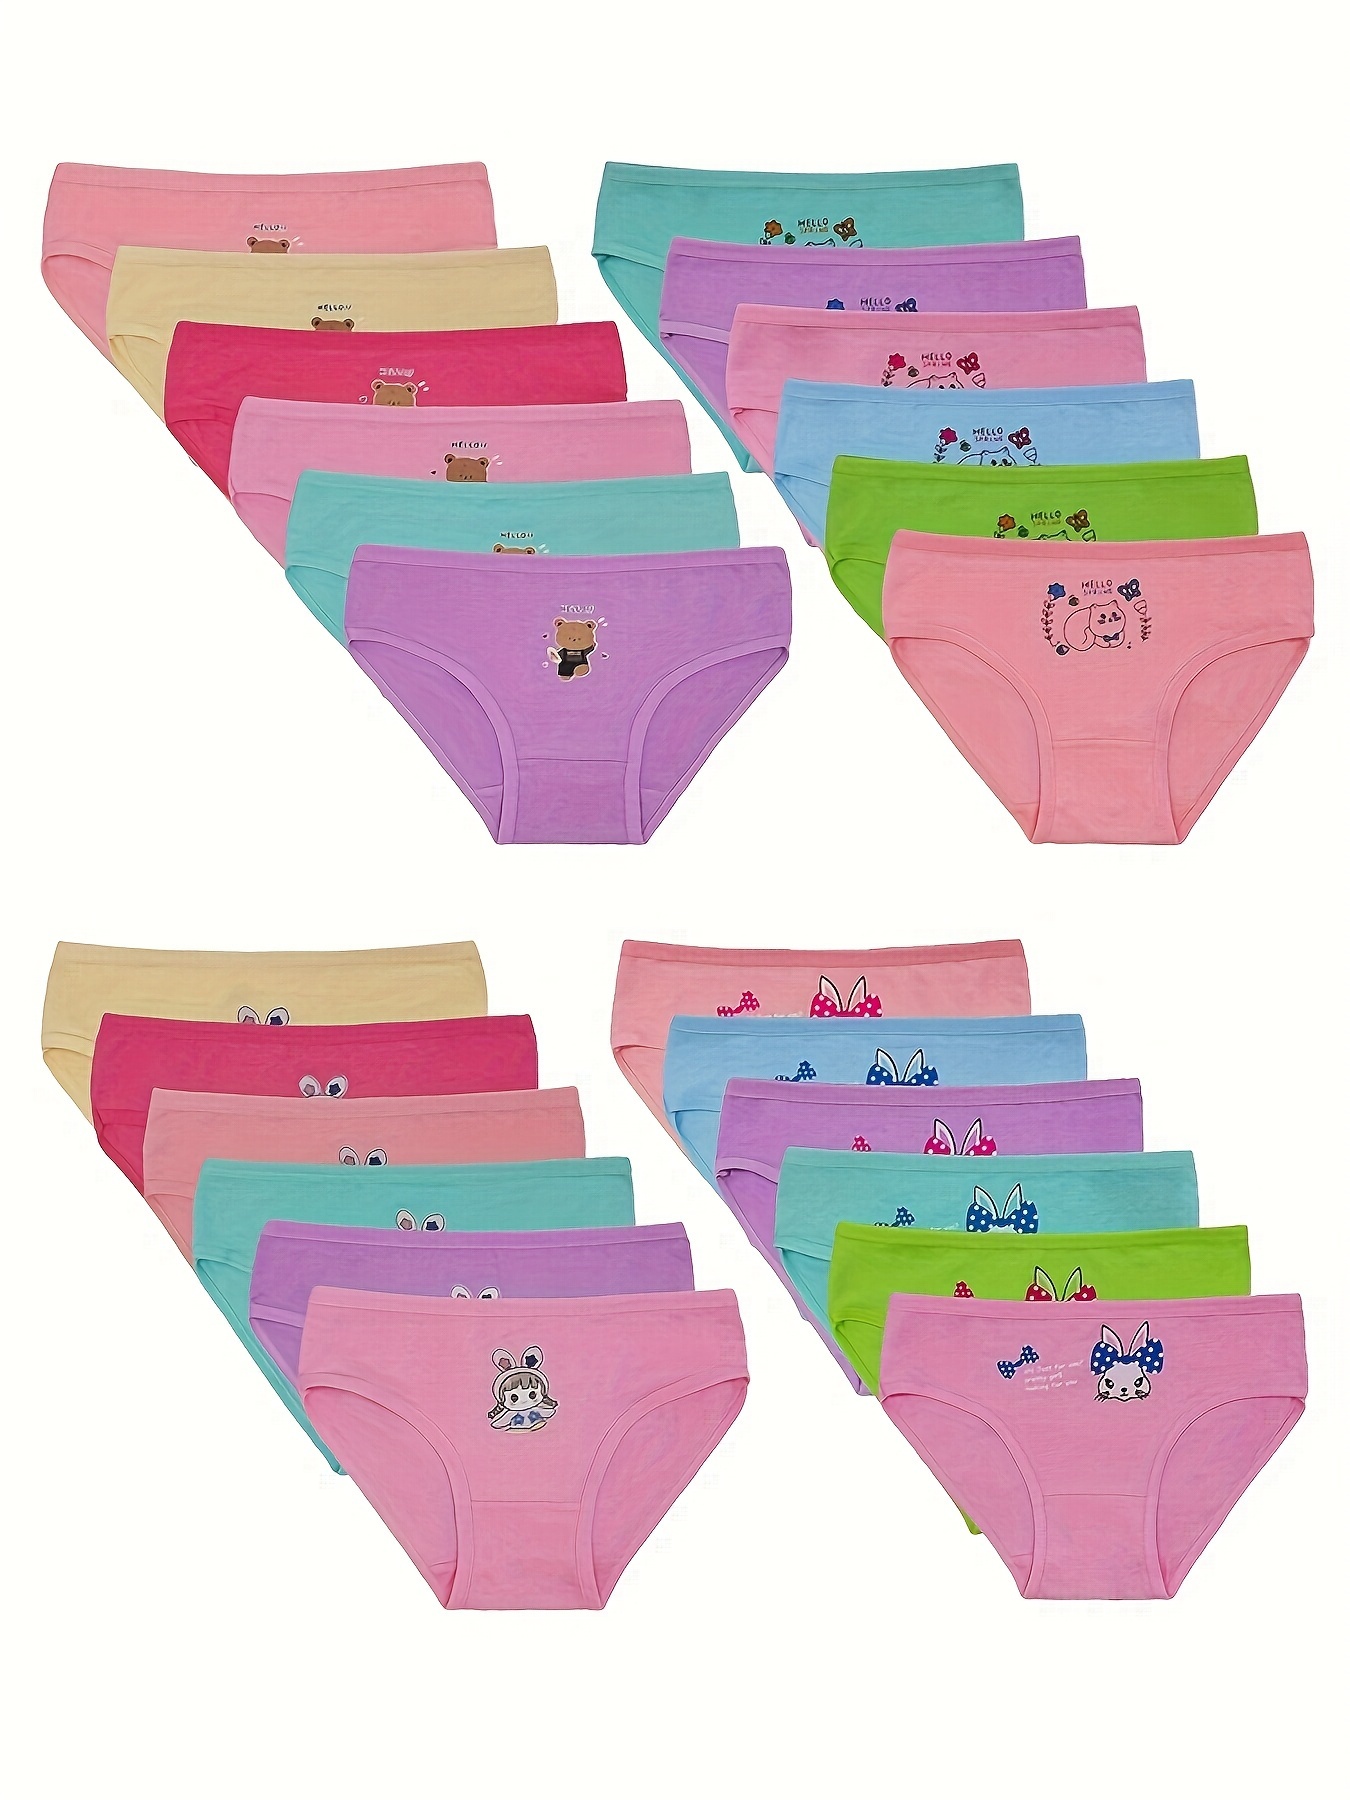 Hello Kitty Panties Women's Briefs -  Australia